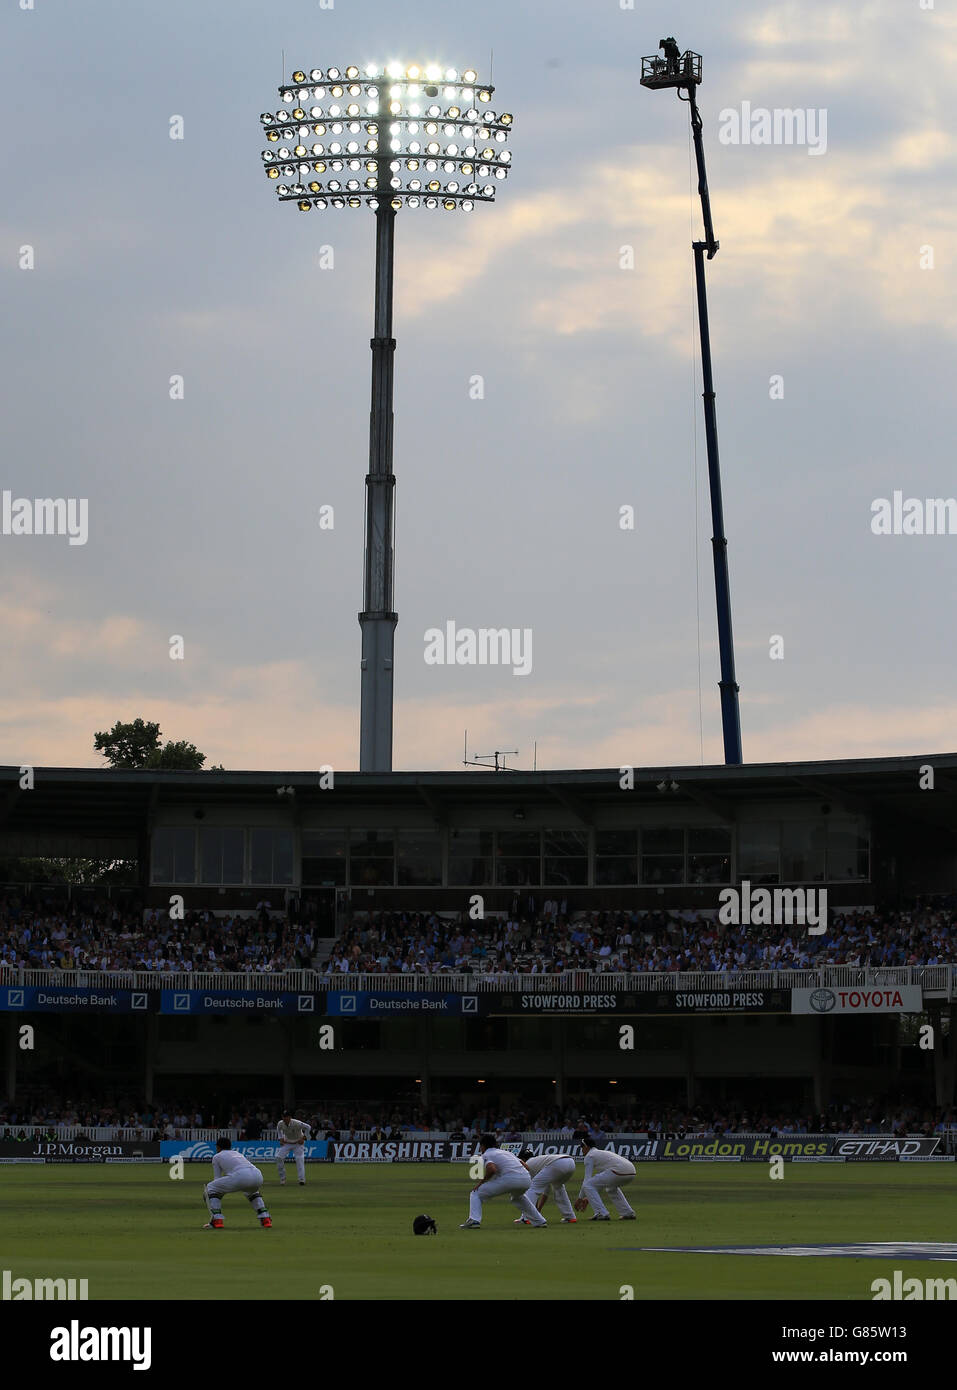 Cricket - Zweiter Investec Ashes Test - England gegen Australien - Tag eins - Lord's. Flutlichter werden während der ersten Spieltage beim zweiten Investec Ashes Test in Lord's, London, eingeschaltet. Stockfoto